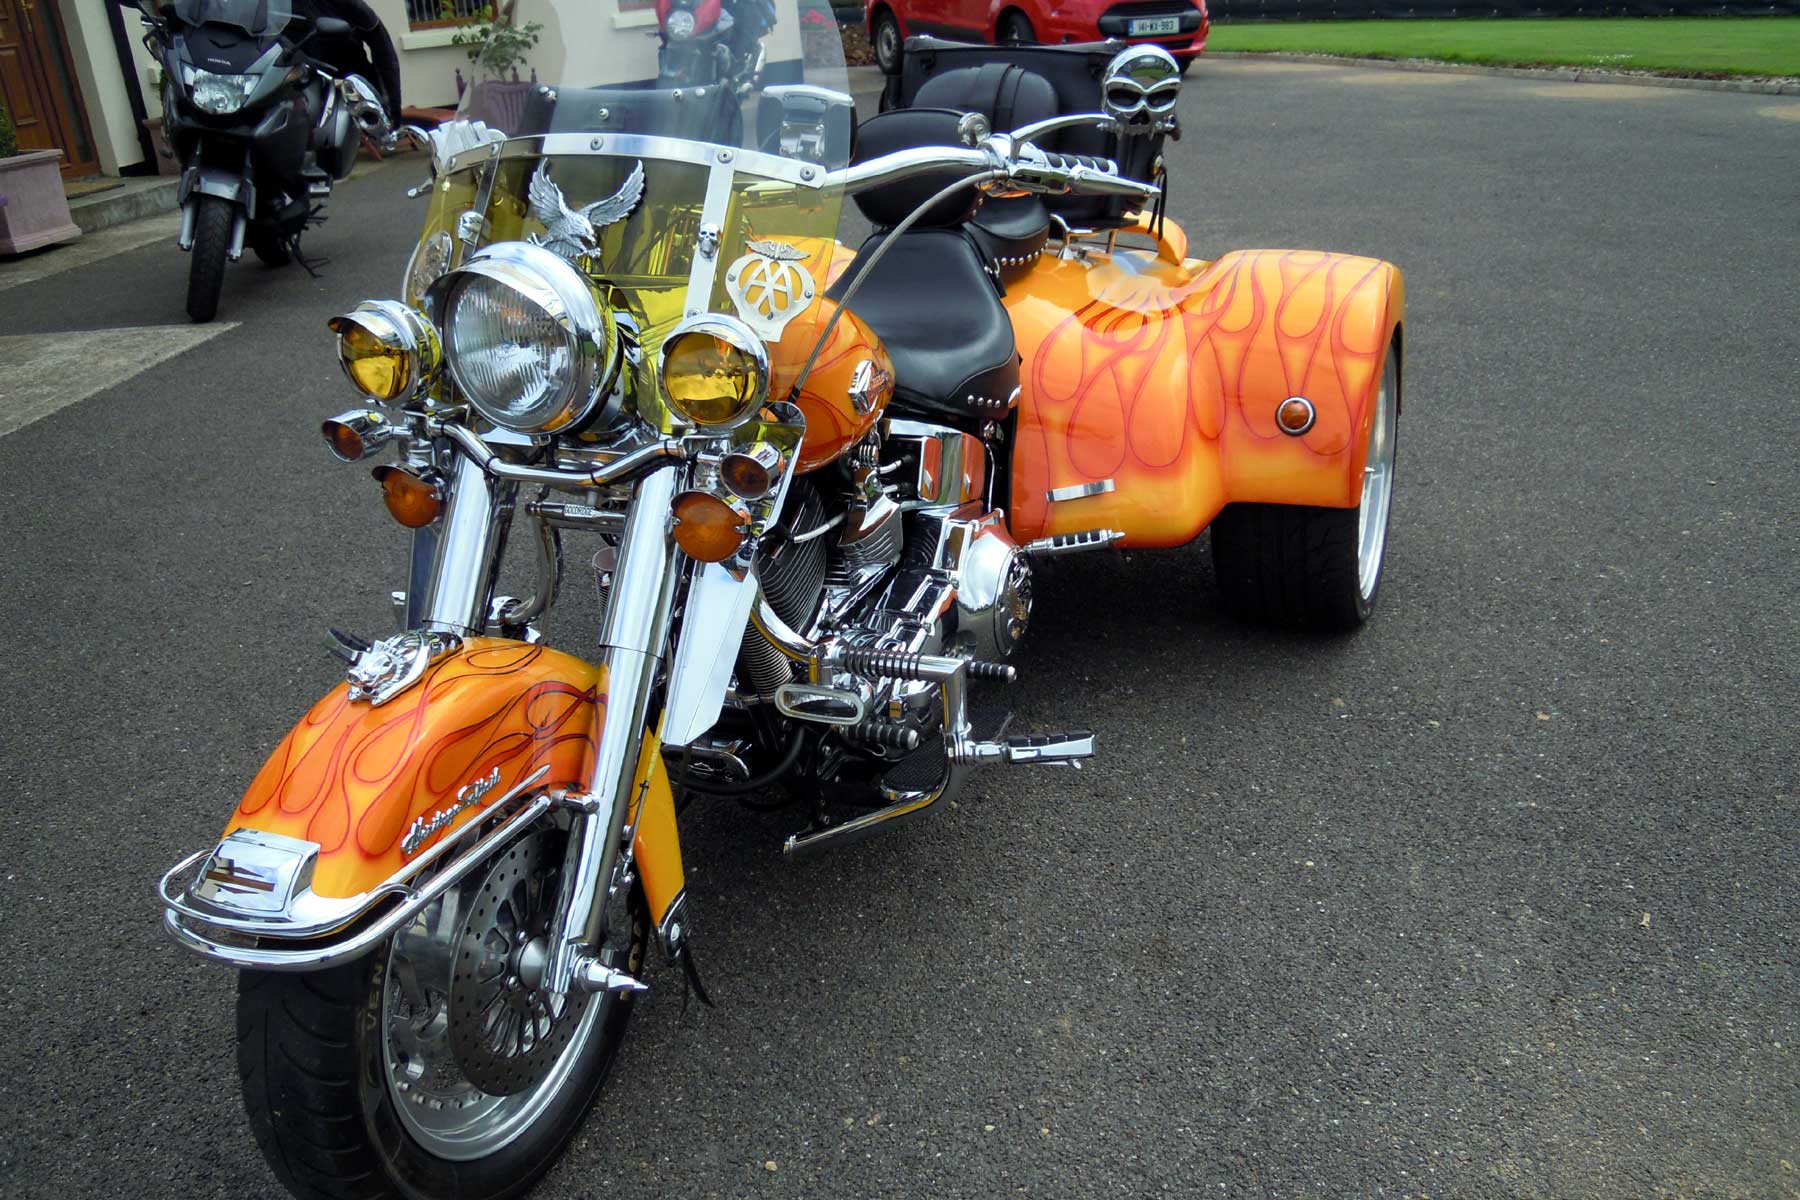 Trike for sale.... - Harley Davidson Forums